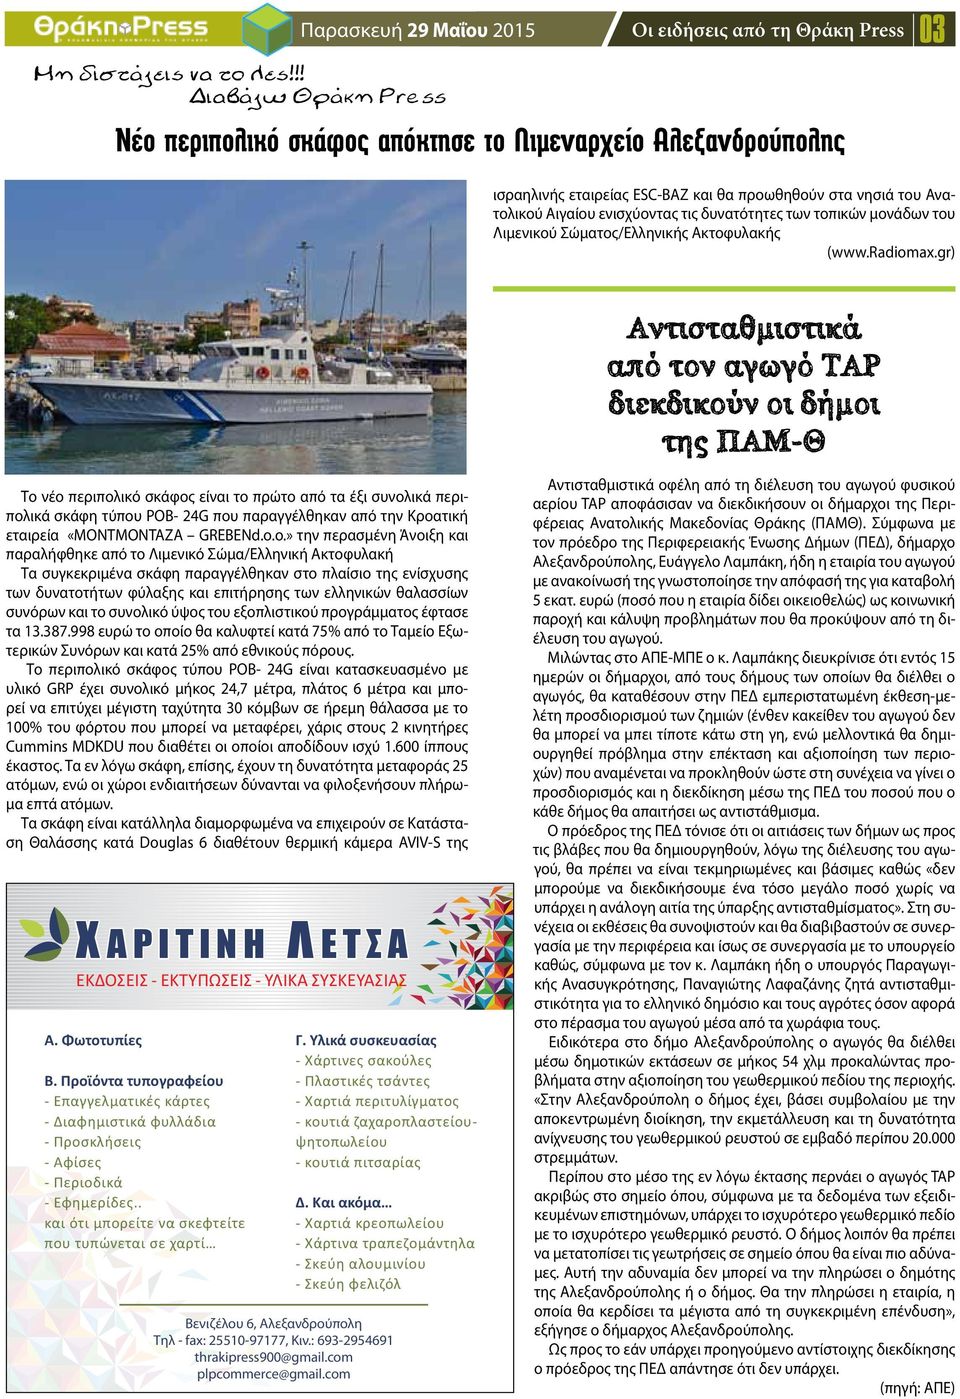 ενισχύοντας τις δυνατότητες των τοπικών μονάδων του Λιμενικού Σώματος/Ελληνικής Ακτοφυλακής (www.radiomax.